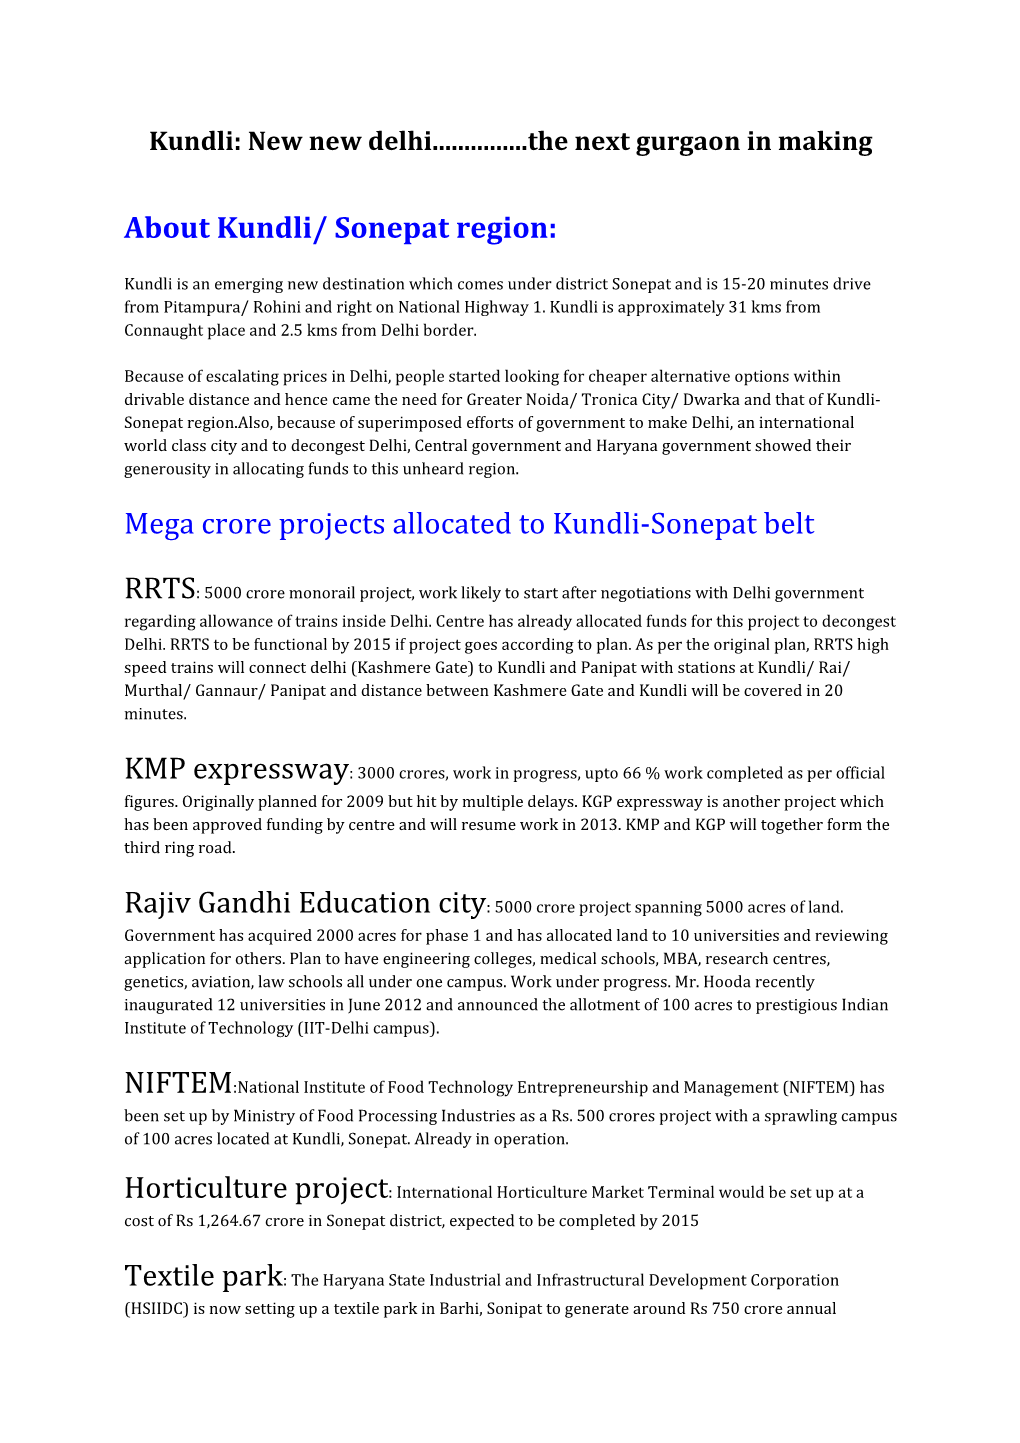 About Kundli/ Sonepat Region